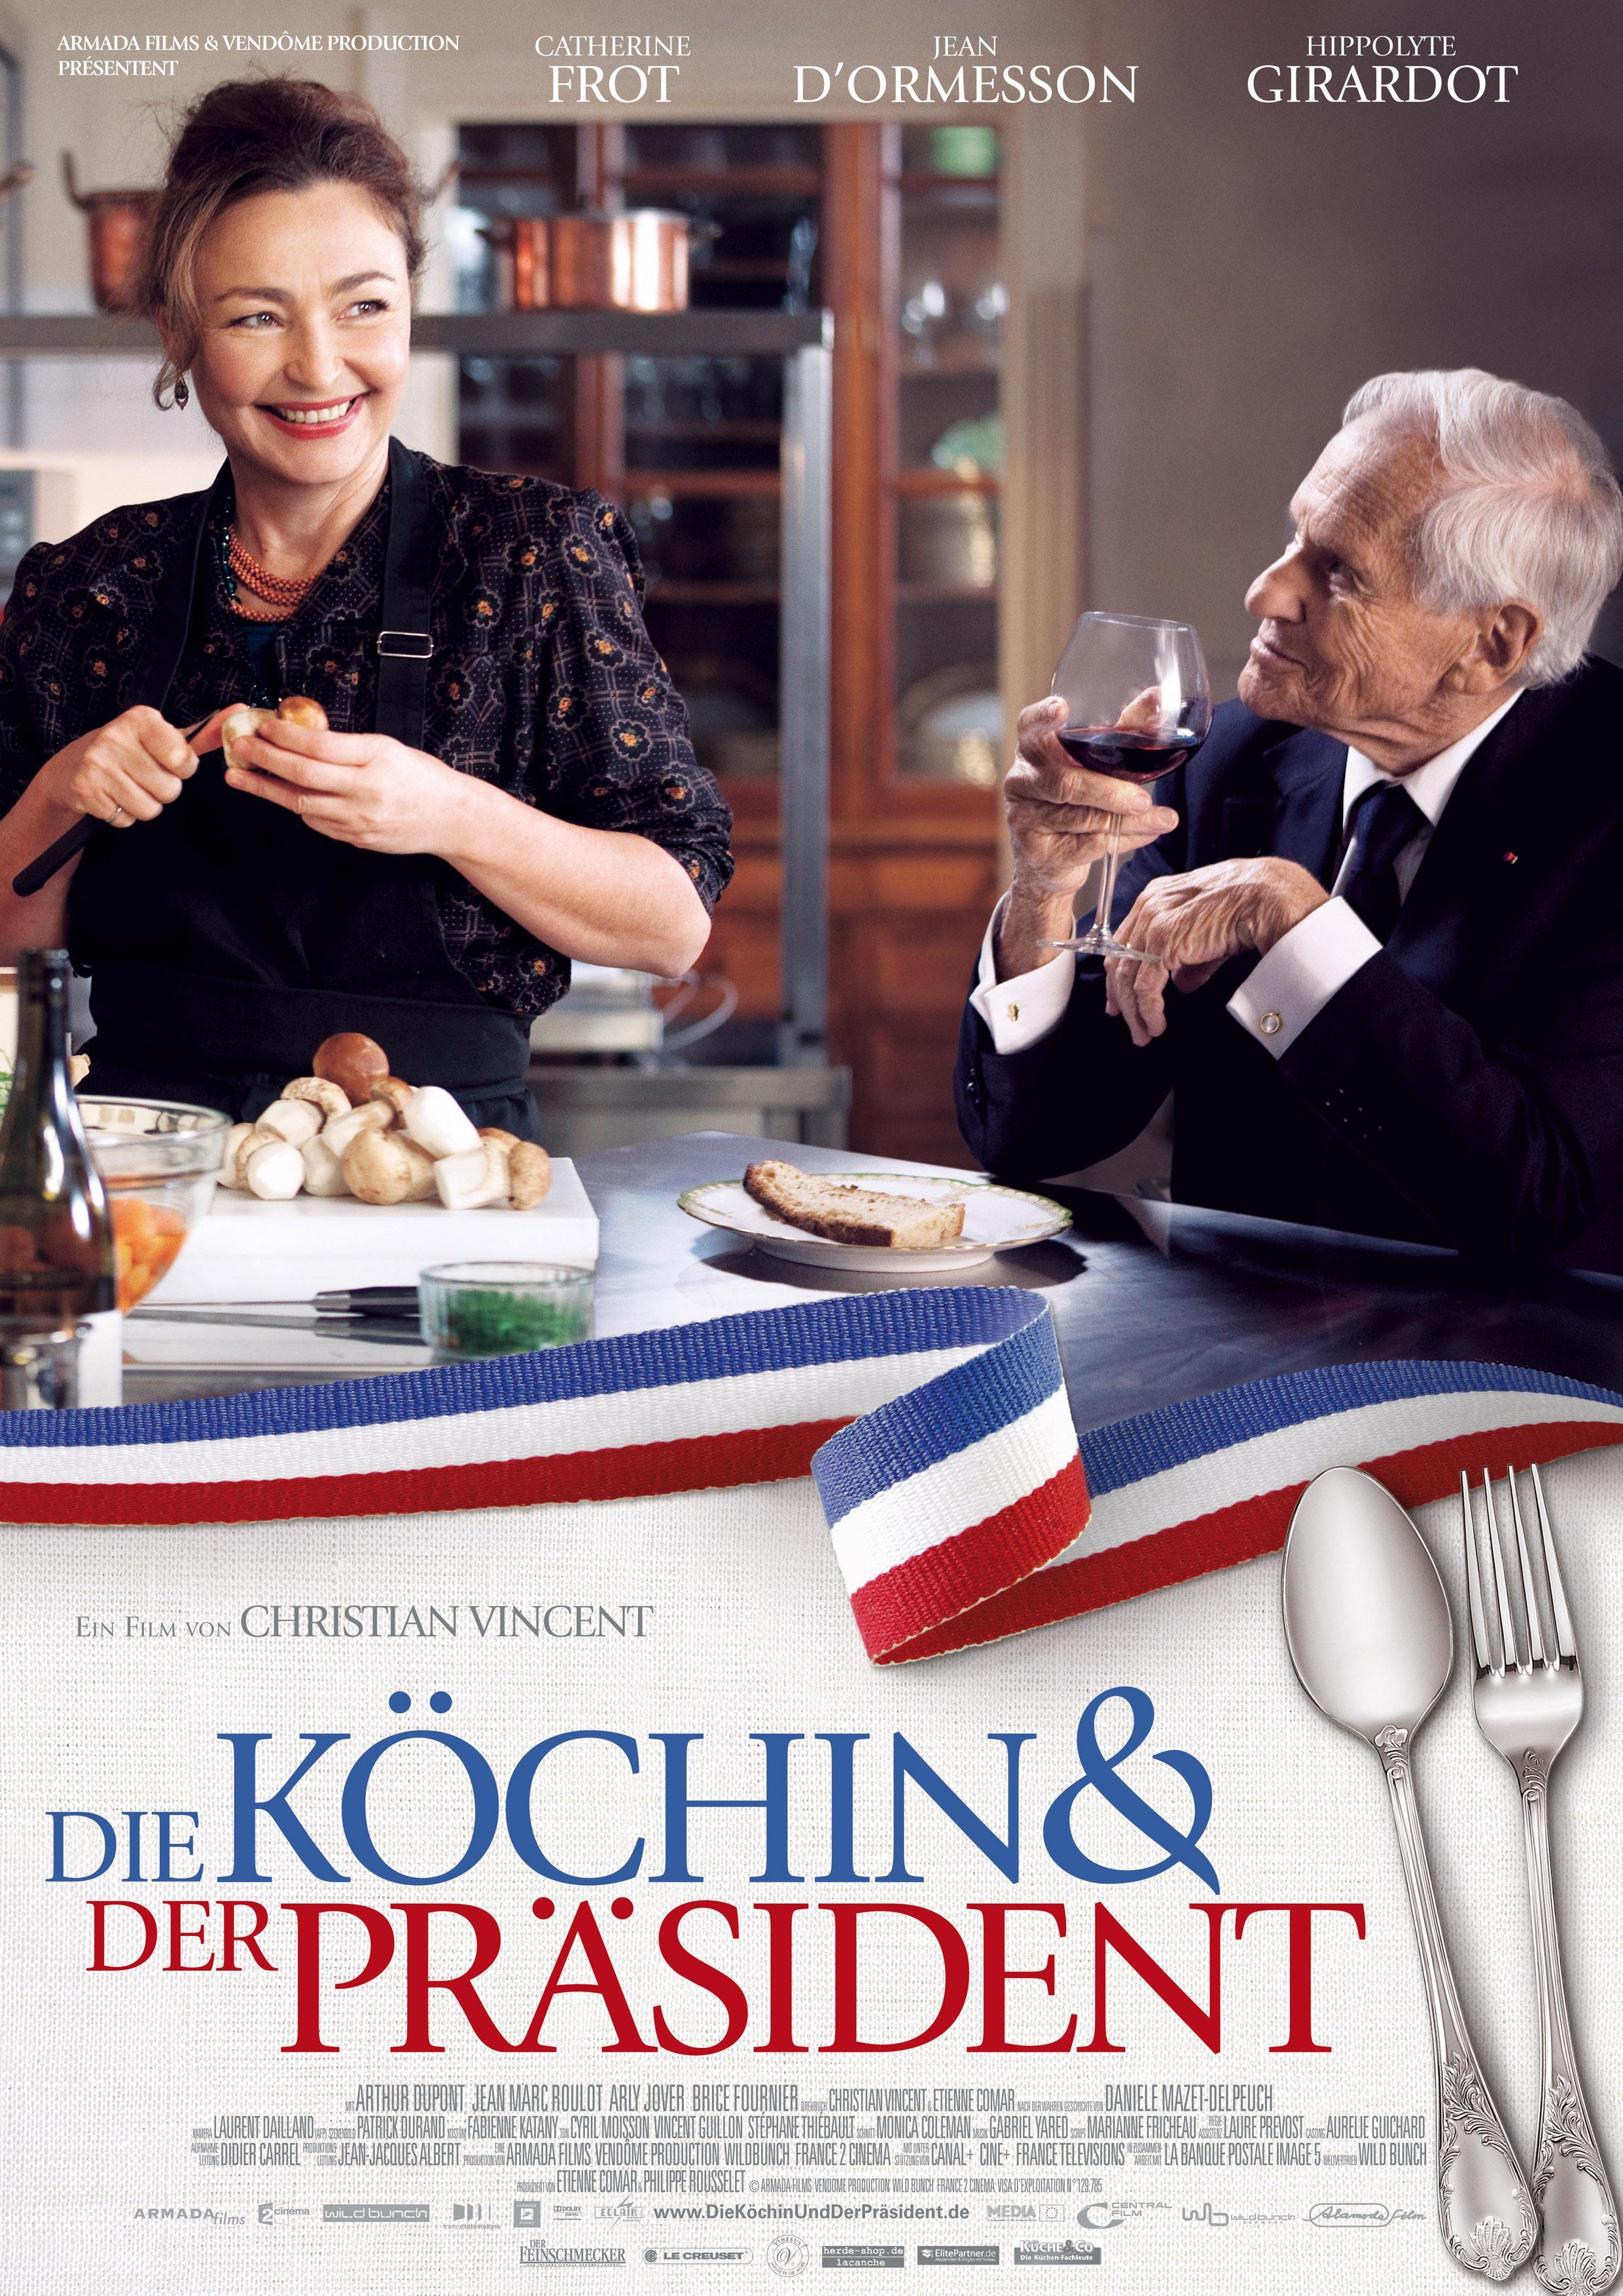 Постер фильма Дворцовая кухня | Les saveurs du Palais